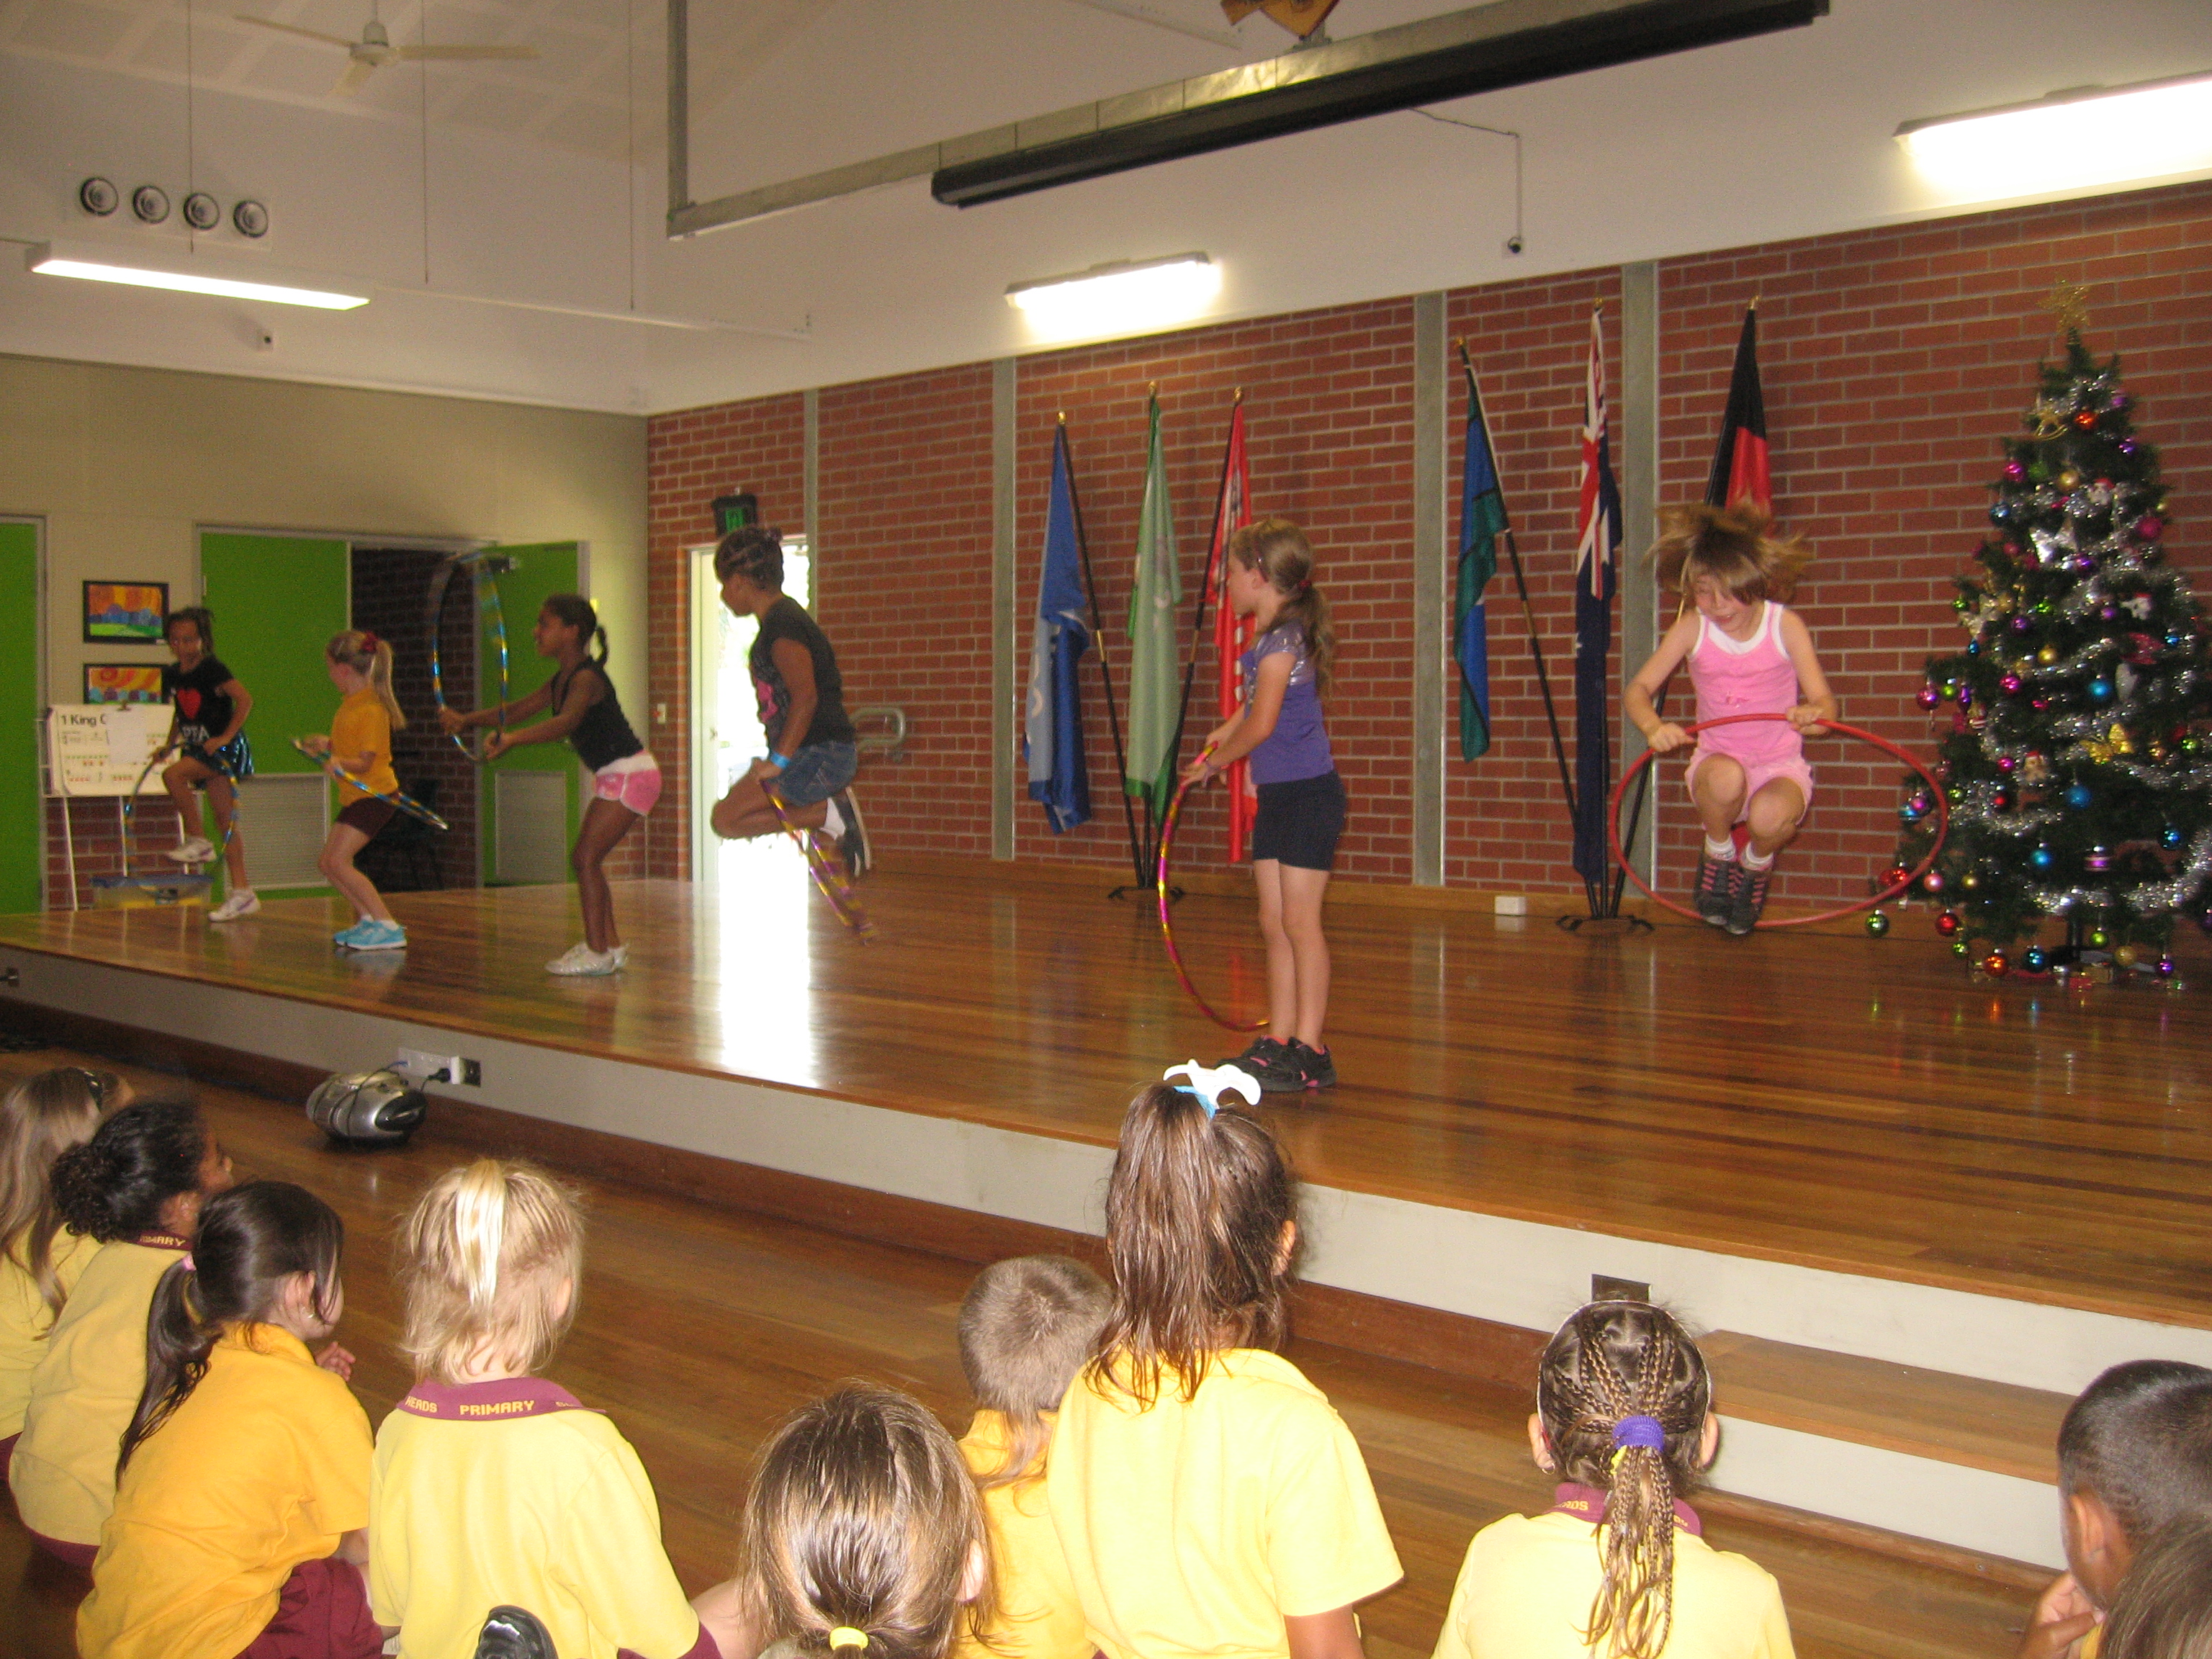 Hula hoop dancers in action